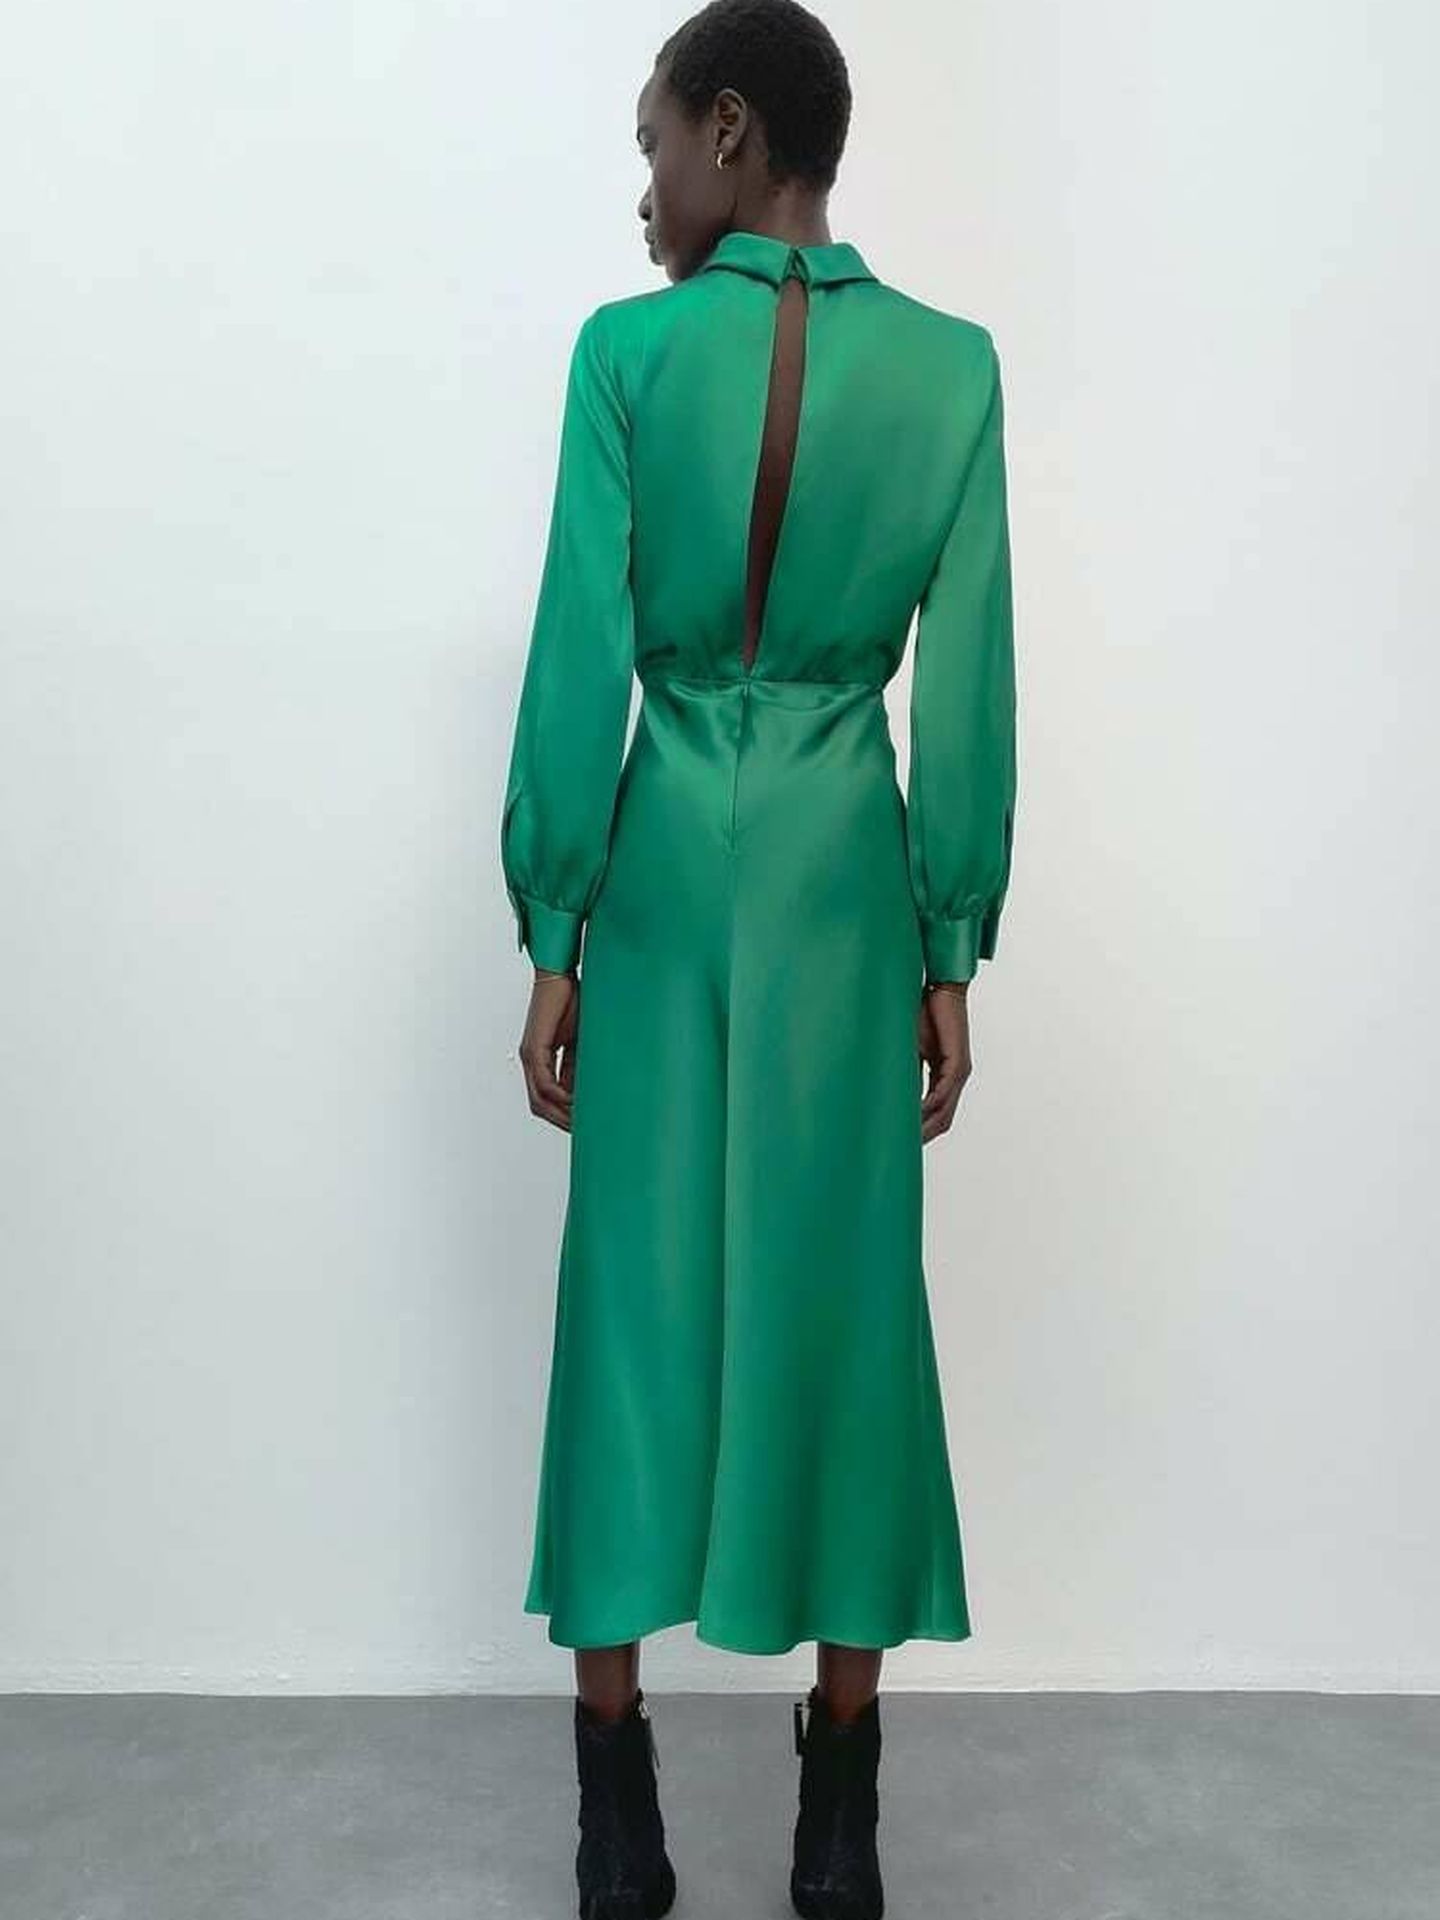 El vestido verde de Zara que tiene Vicky Martín Berrocal. (Cortesía)